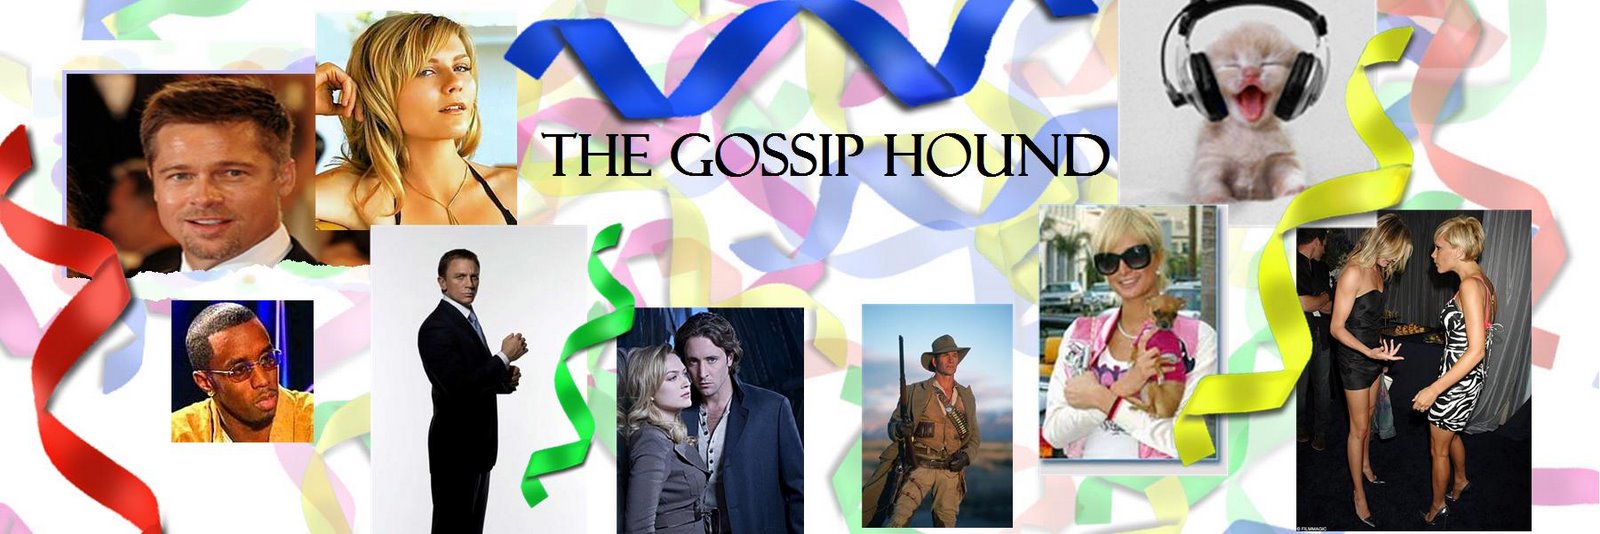 The Gossip Hound